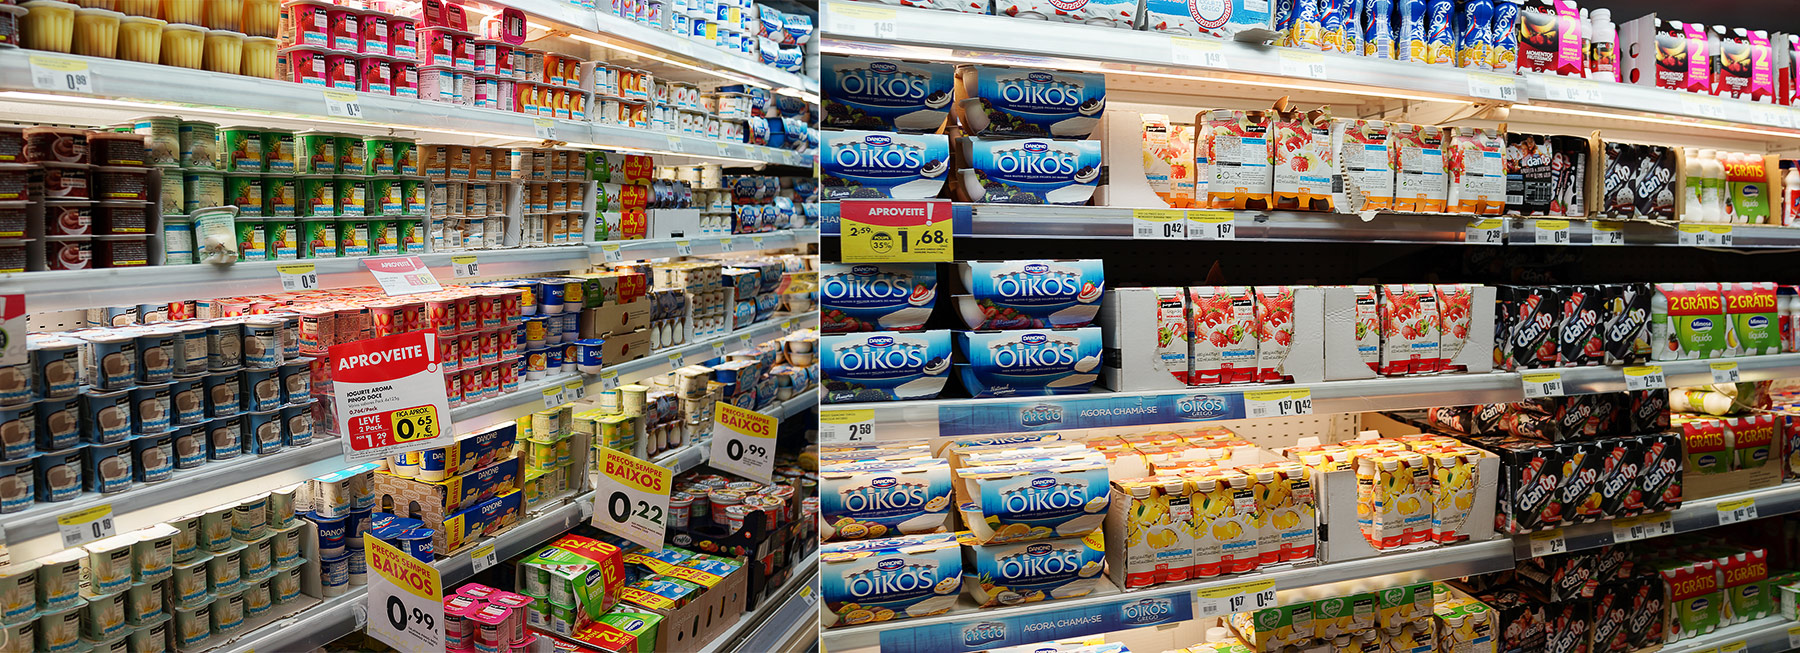 Цены в португальском супермаркете. Насколько выше/ниже российских? DSC02645